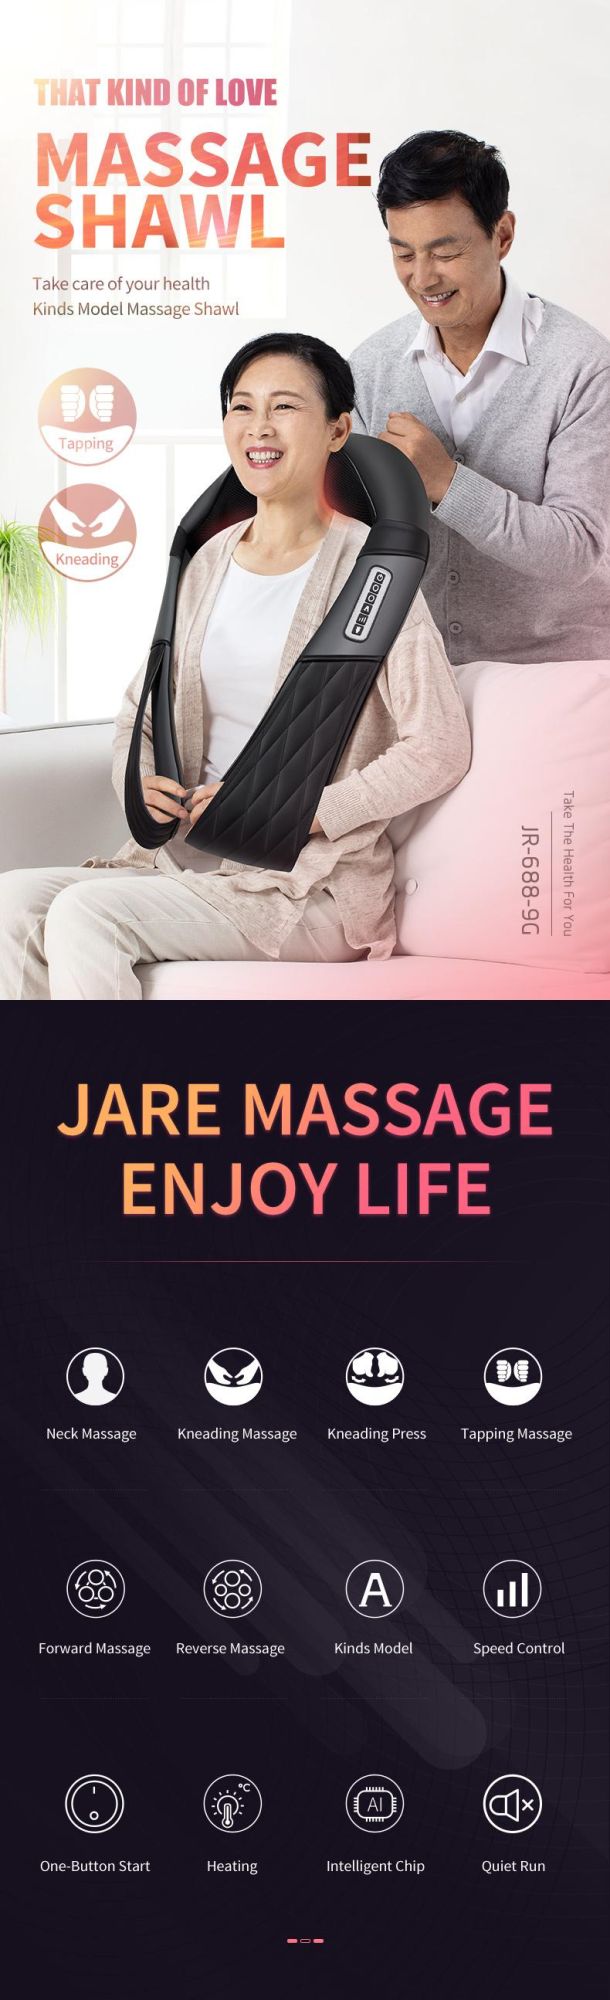 New Kneading Massage Neck Massage Body Massage Shawl